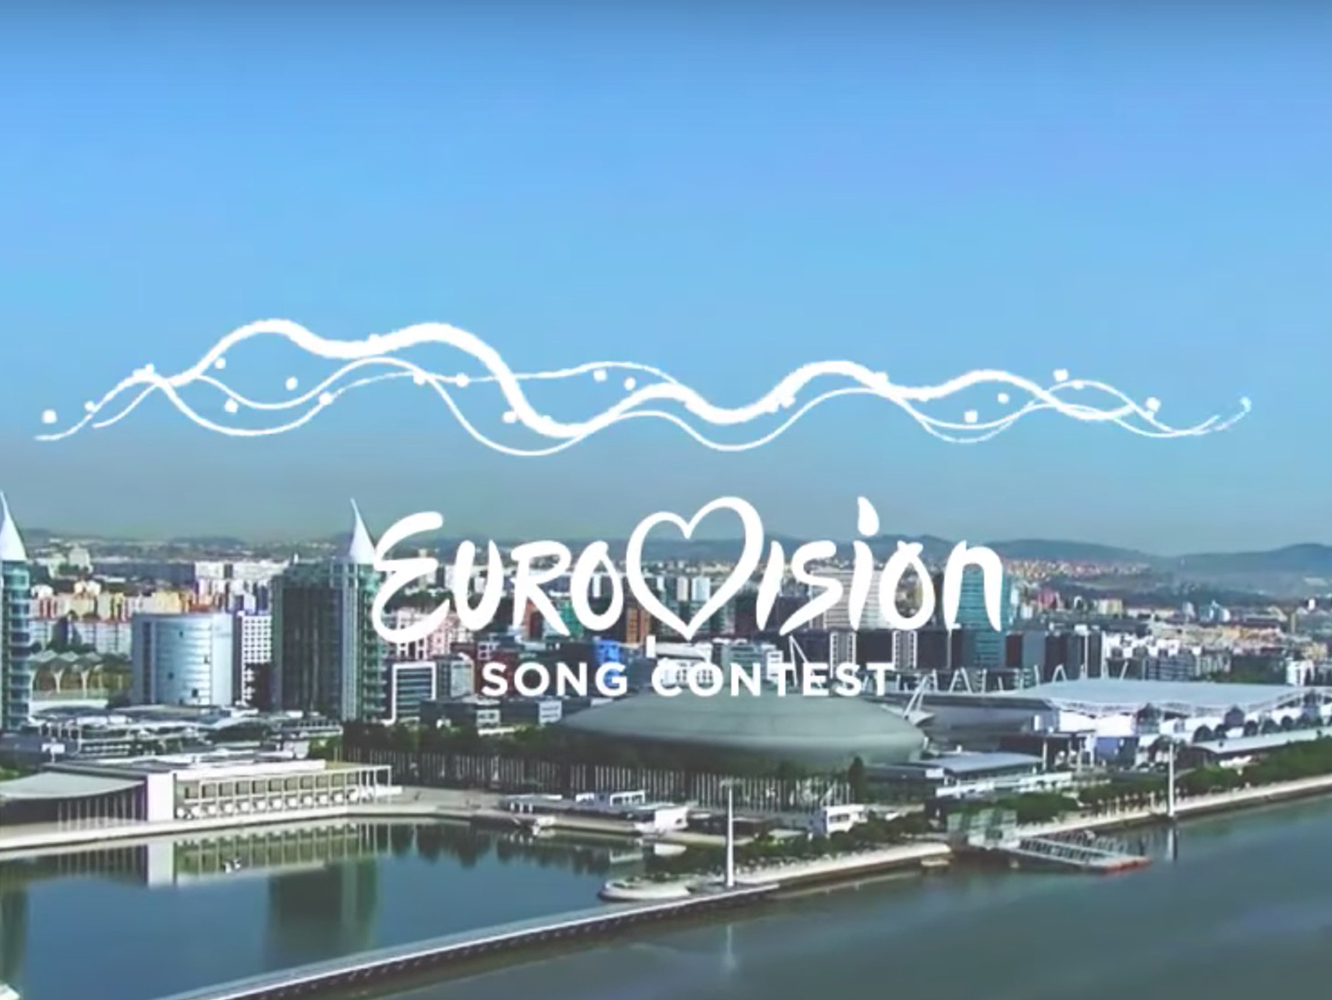  Lisboa da las fechas para que España vuelva a cagarla con Eurovisión